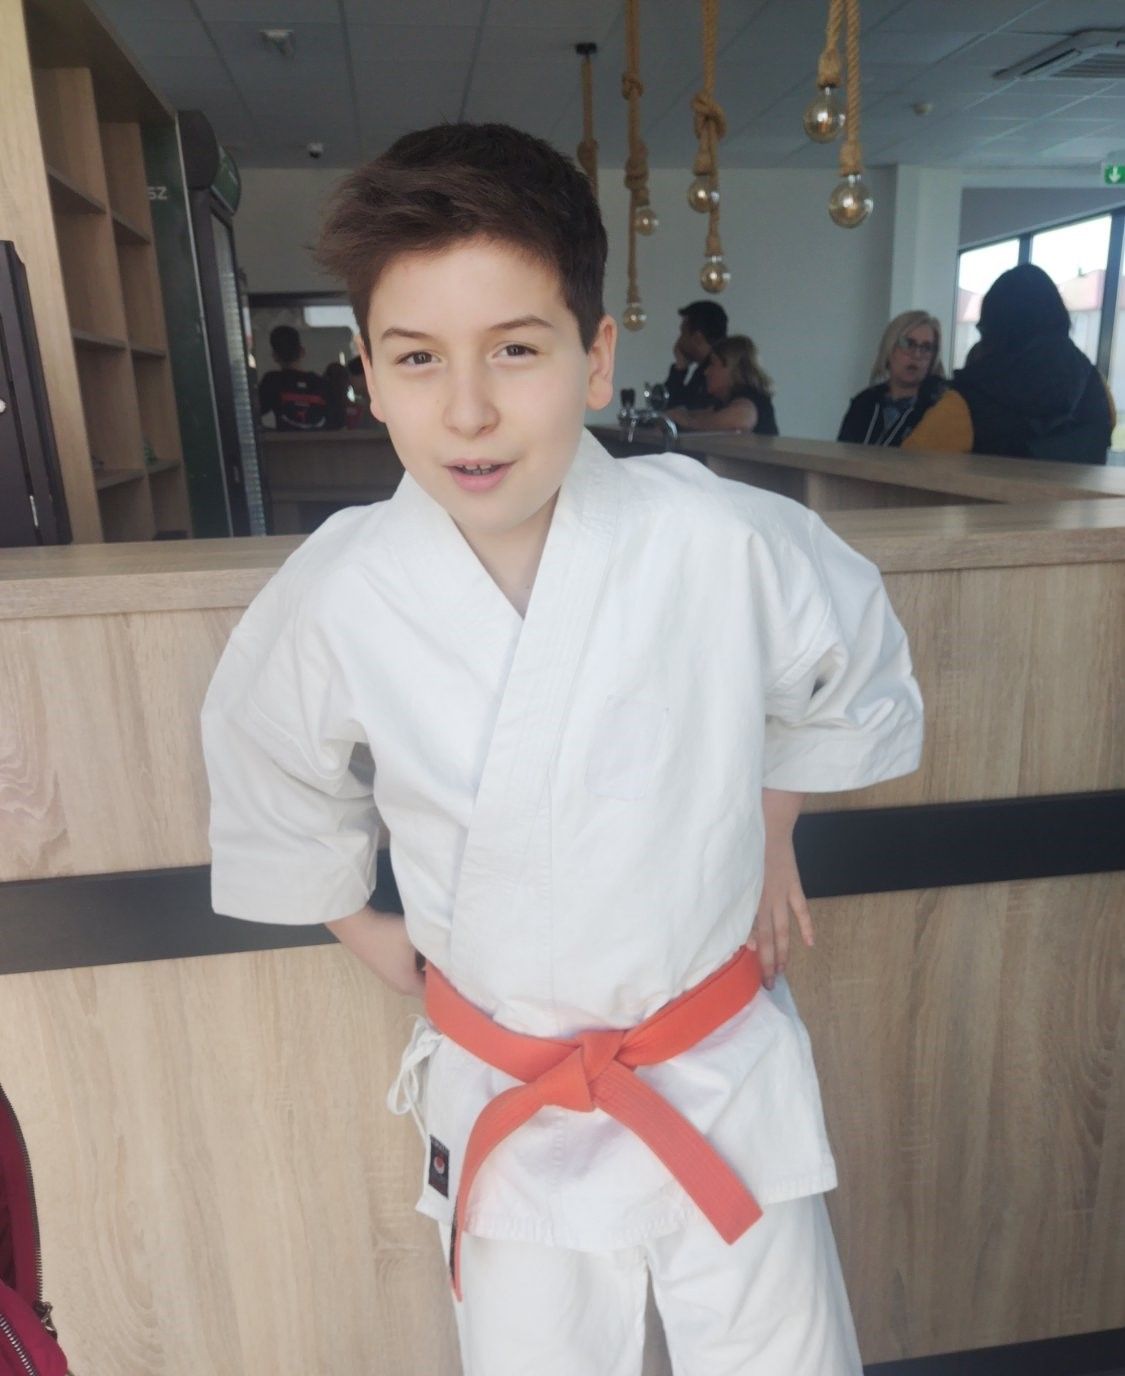 Bátonyterenyén 25 éves a karate